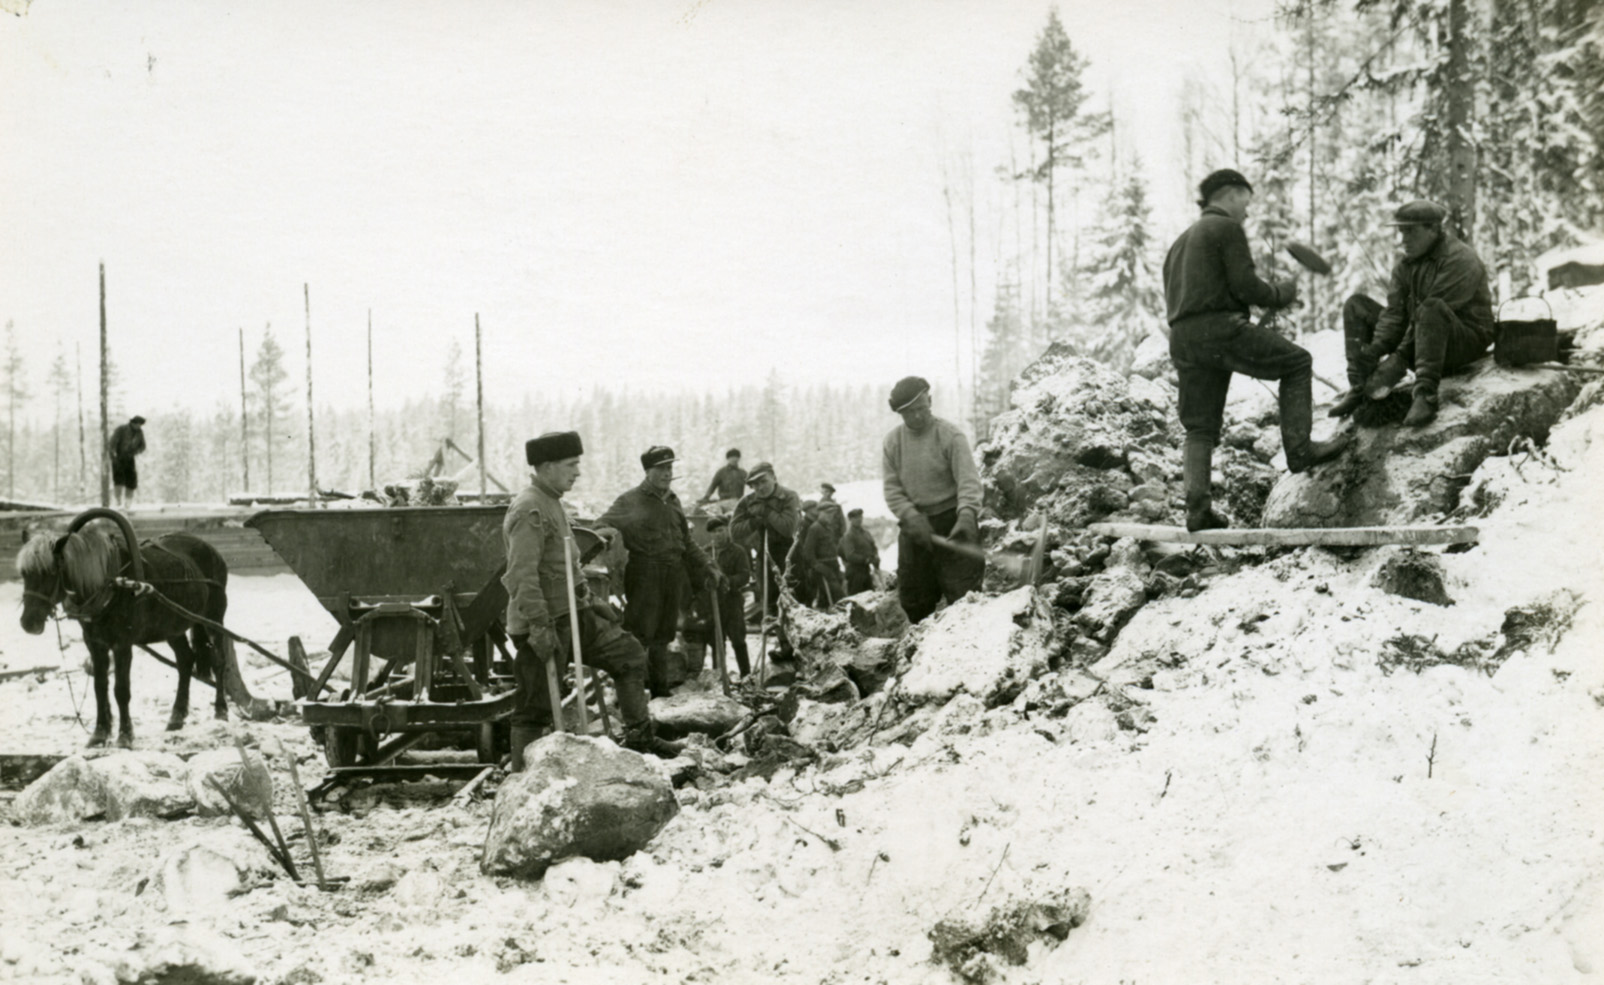 Radanrakentajia töissä kuuppavaunujen ja hevosen kanssa Pori-Haapamäki -rataosalla.